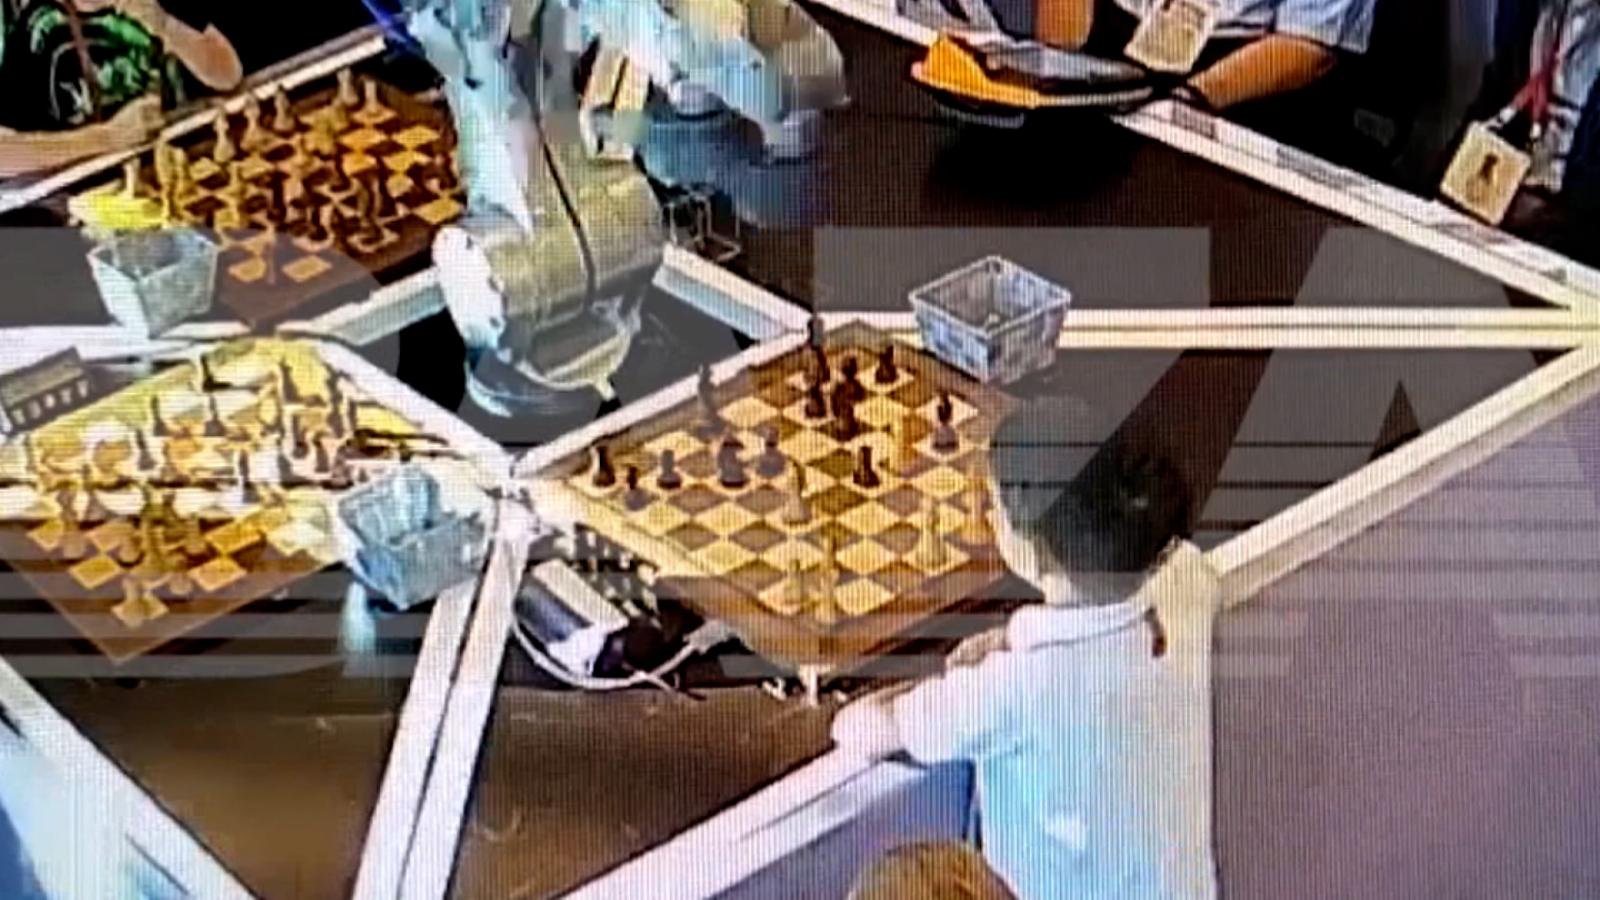 Un robot rompe el dedo de un niño con el que jugaba en un torneo de ajedrez  - N Digital